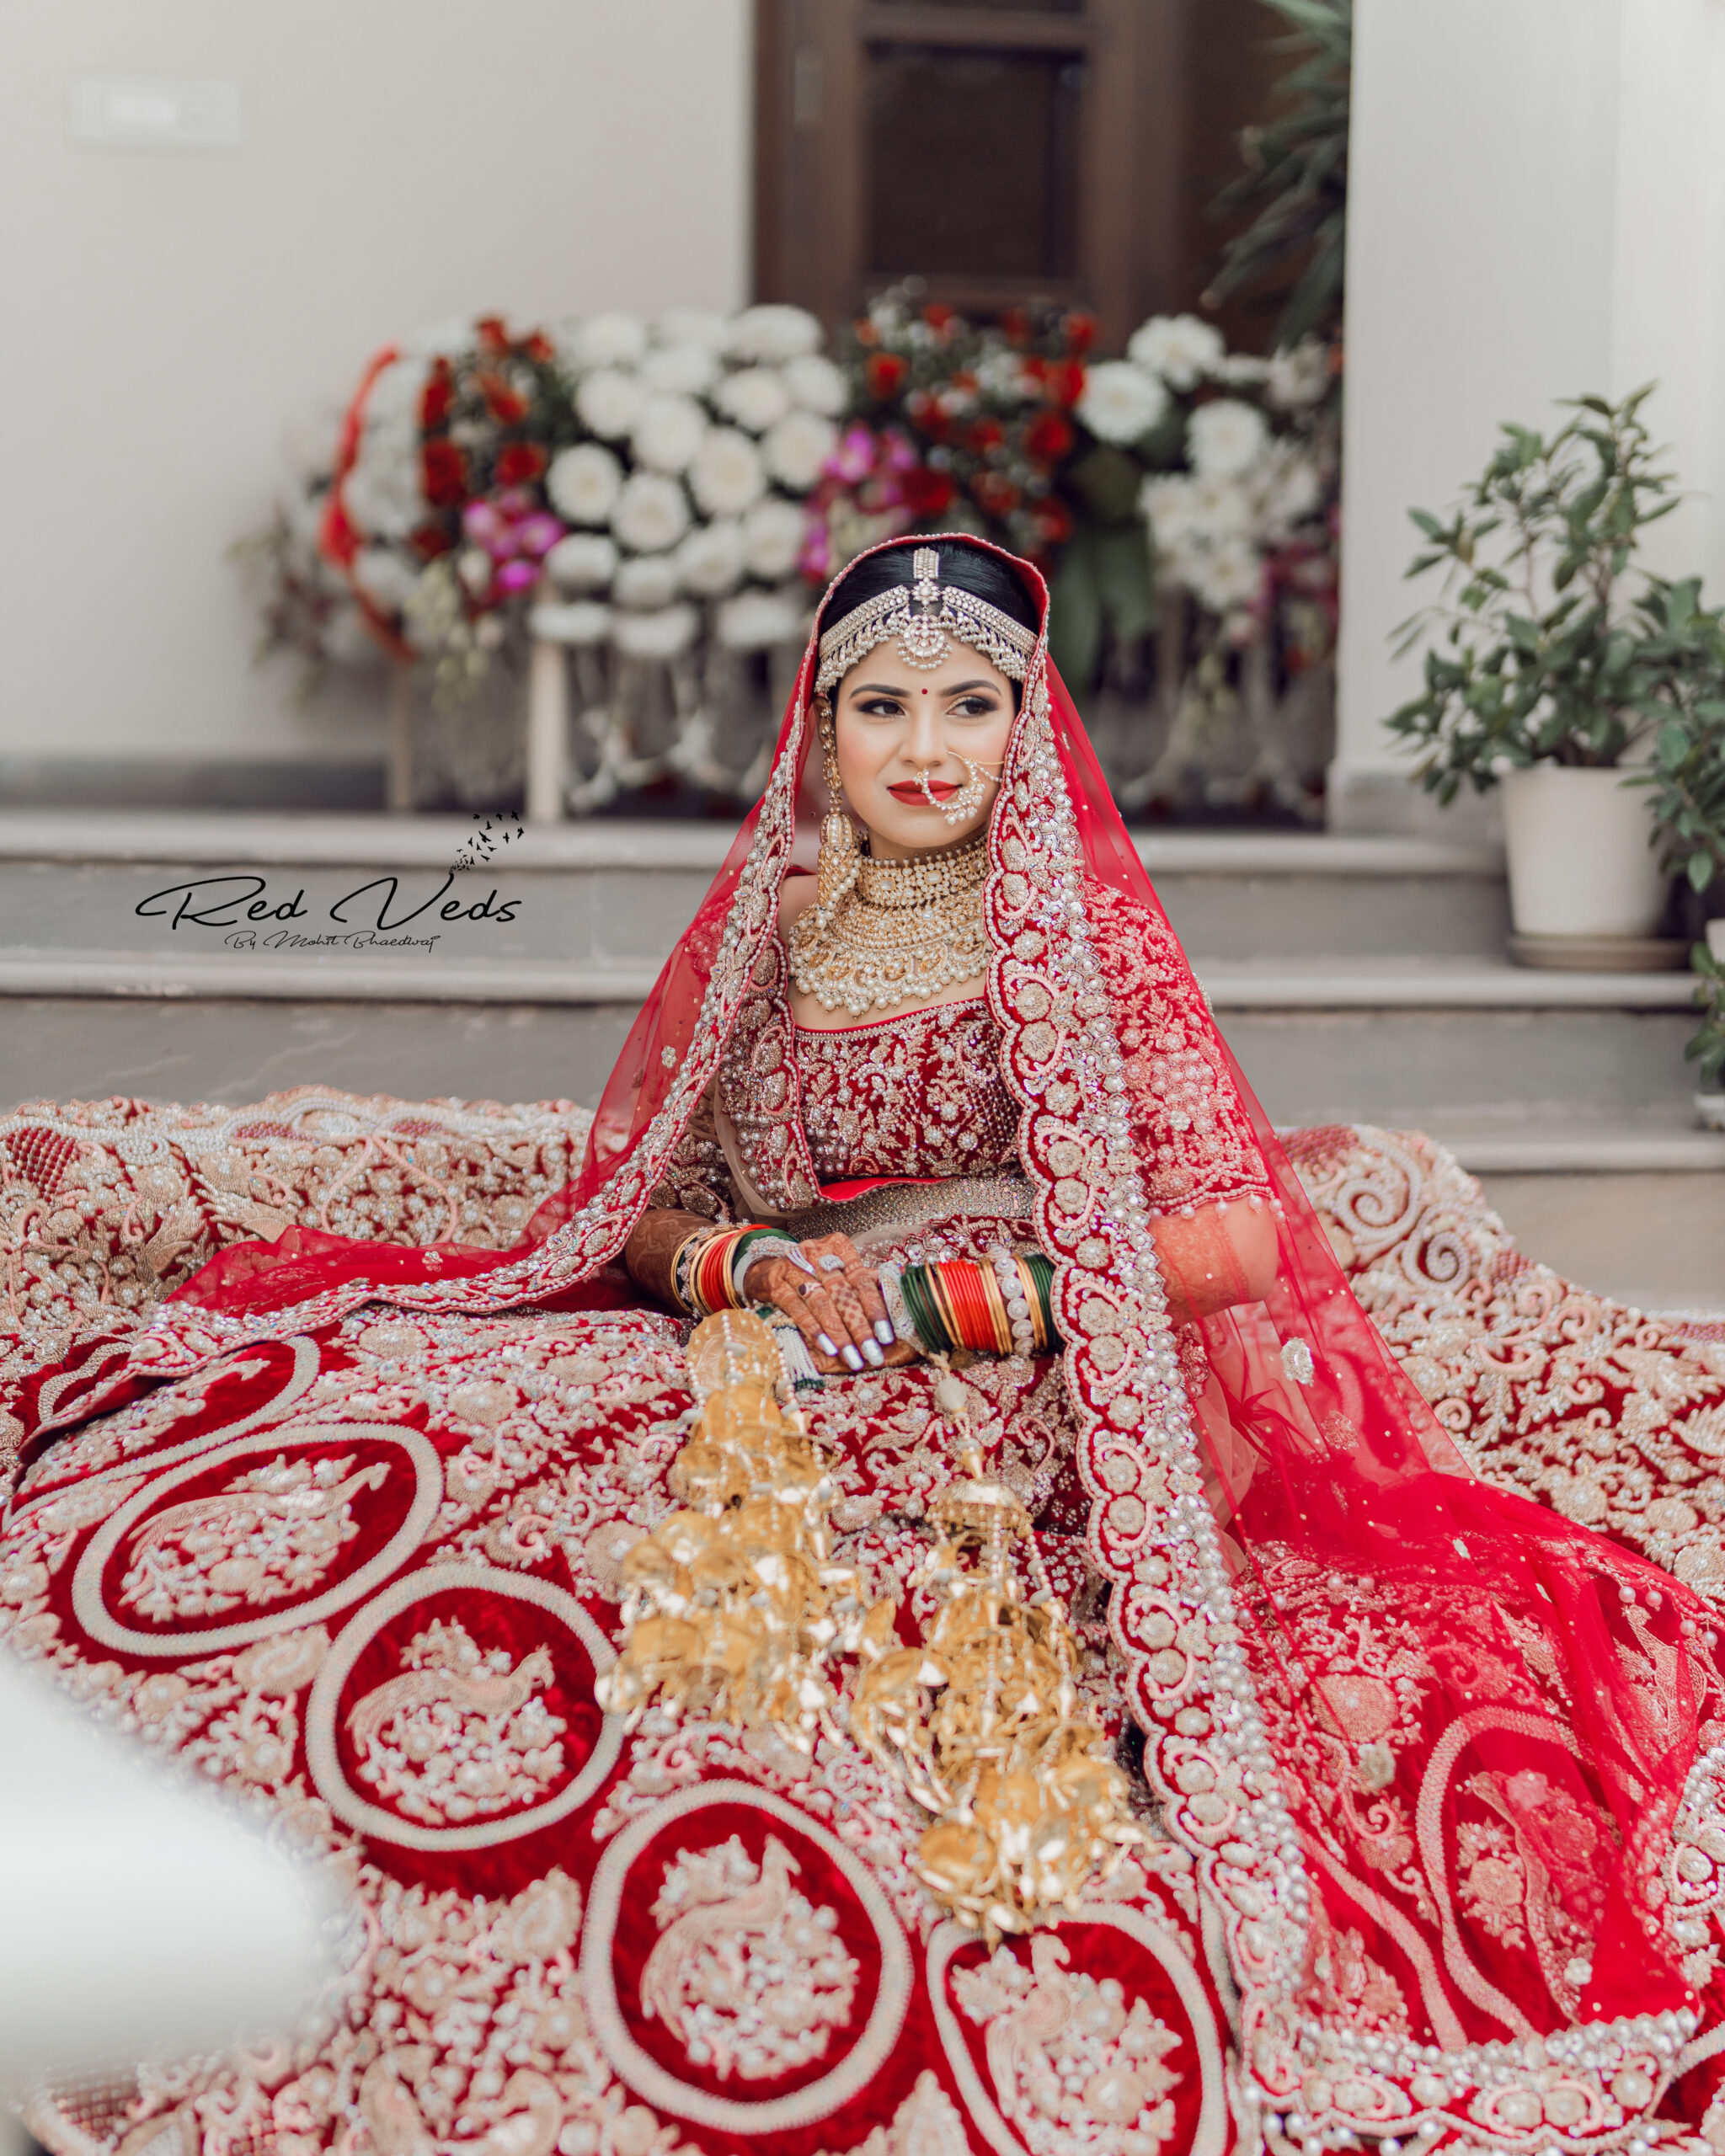 20,000+ Free Indian Wedding & Wedding Images - Pixabay